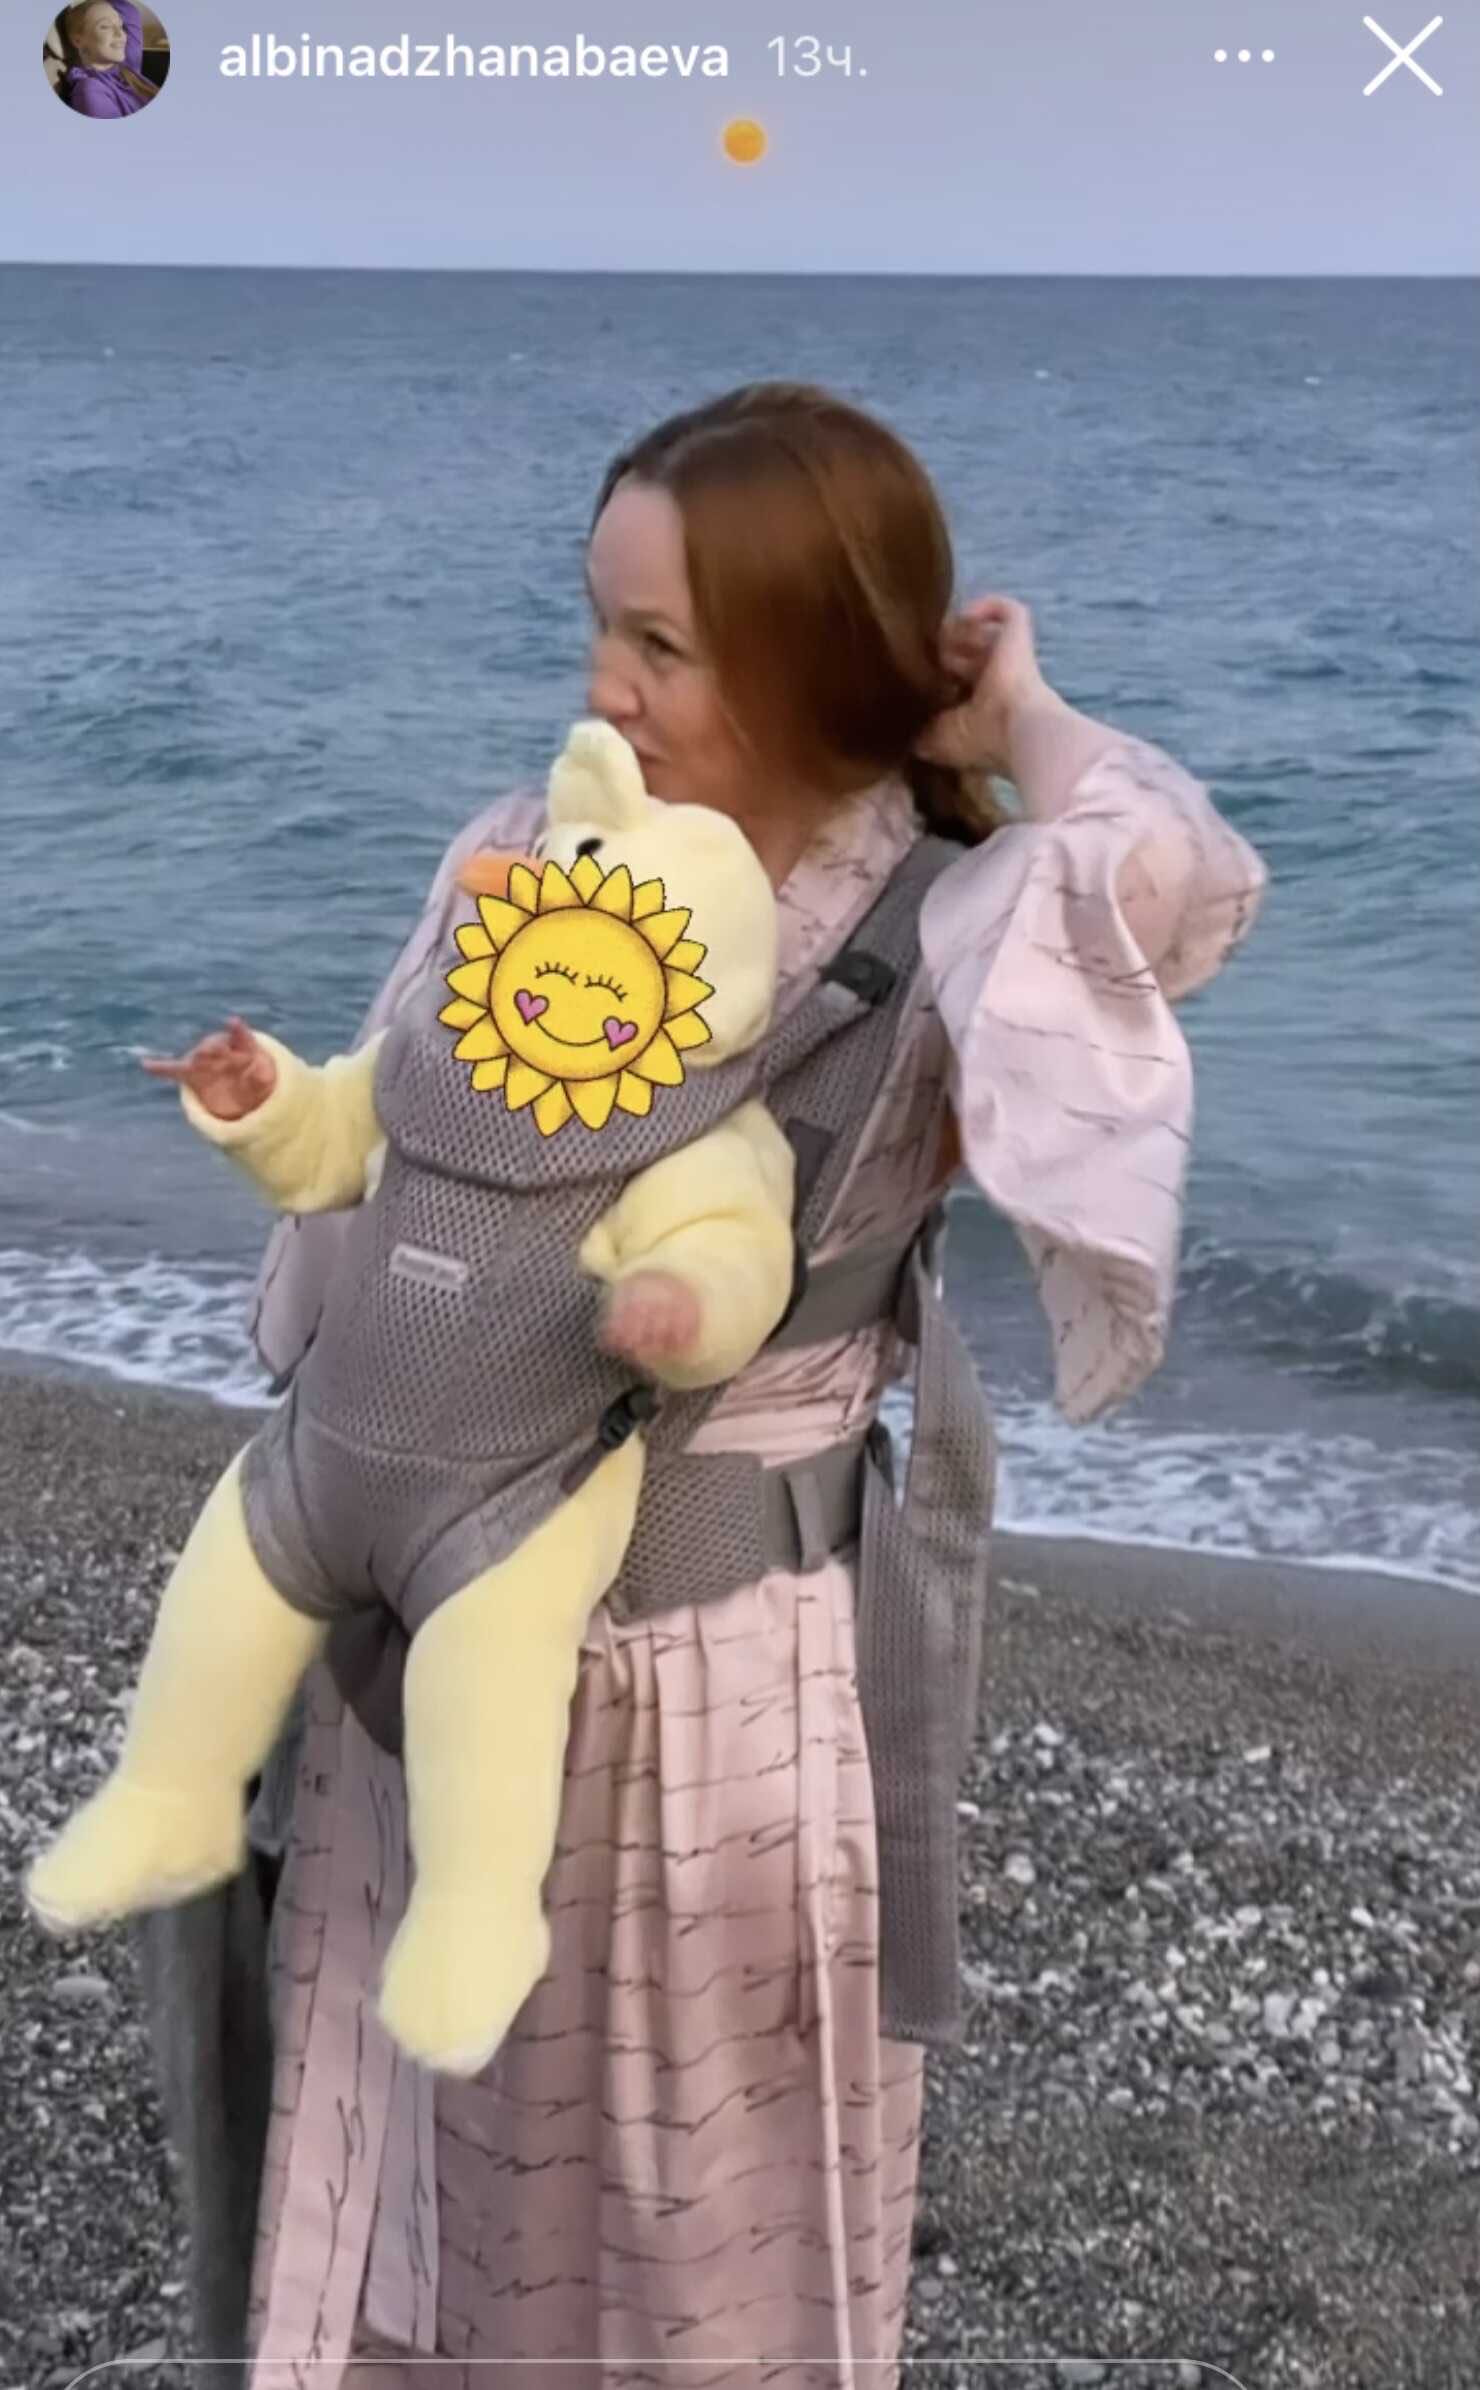 Альбина Джанабаева с 7-месячной дочерью прогулялась по берегу моря